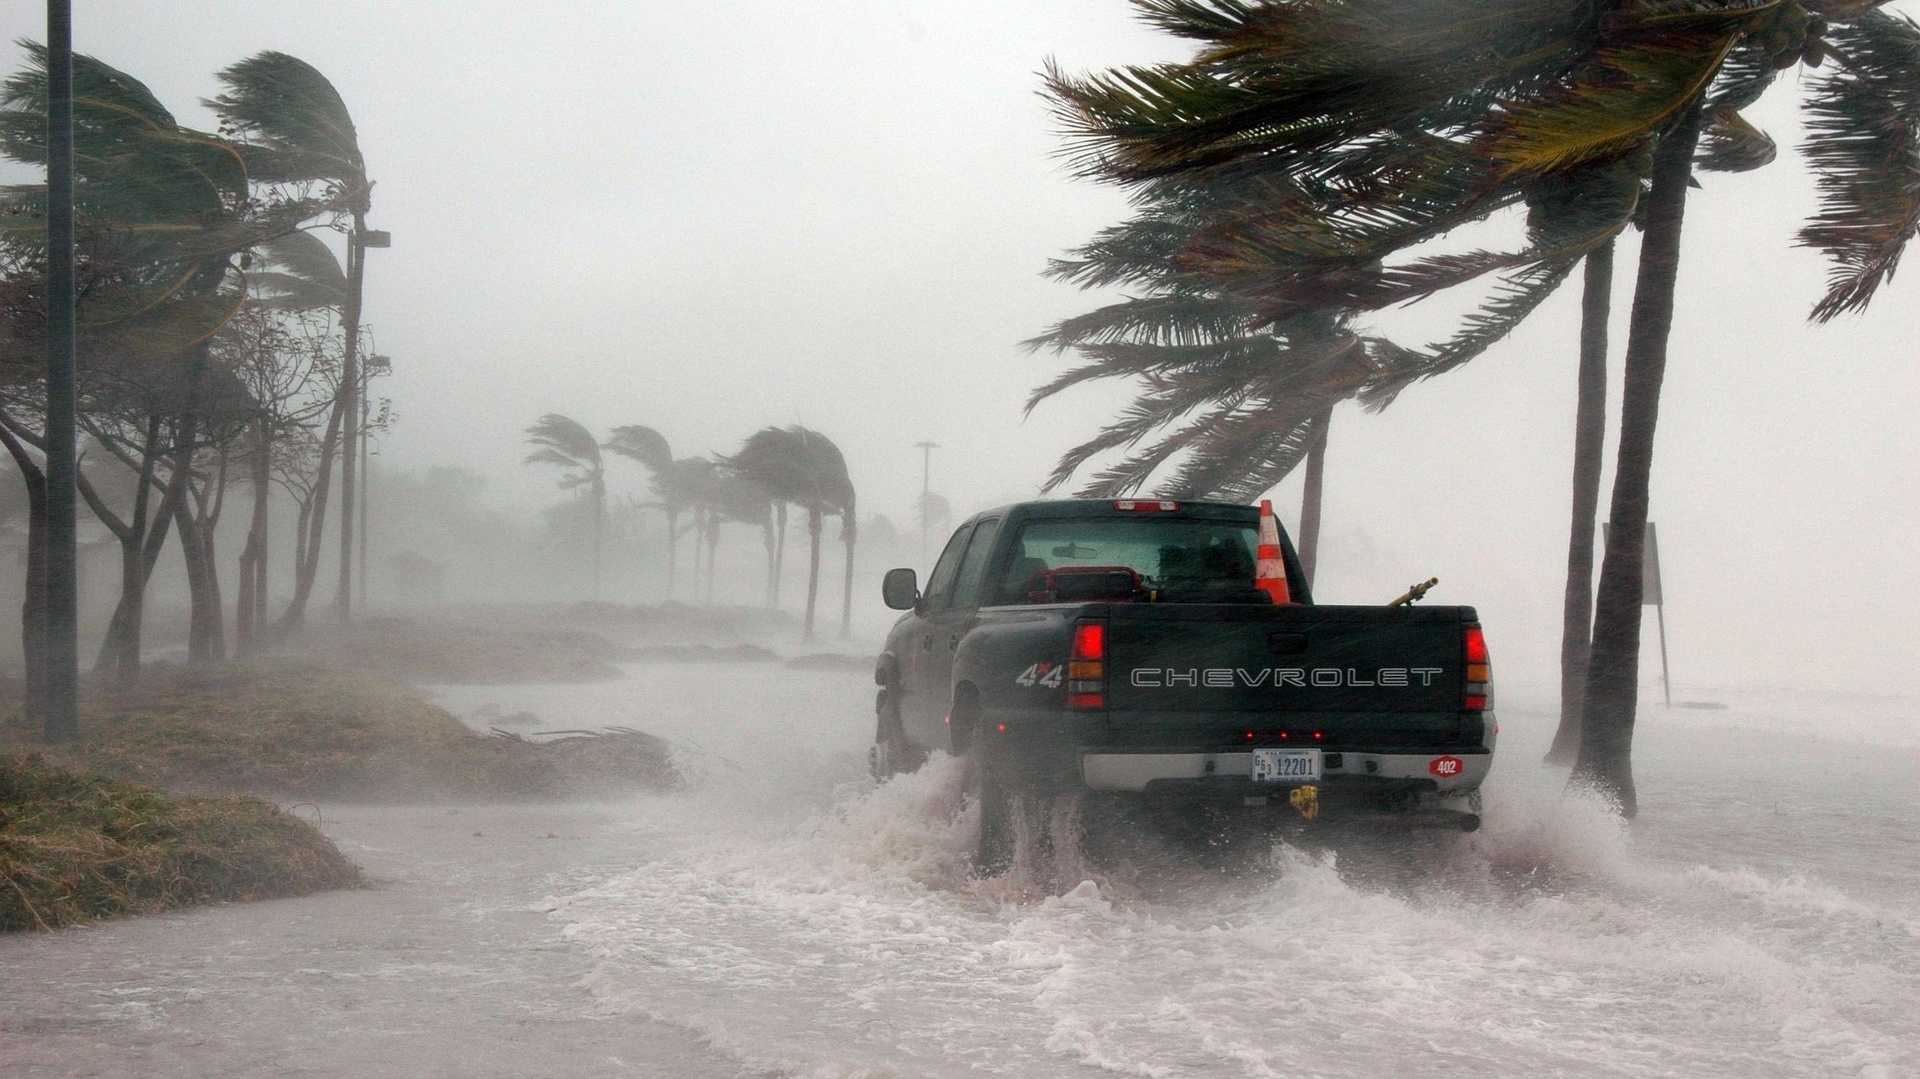 Hurrikan wütet vor Küste Floridas